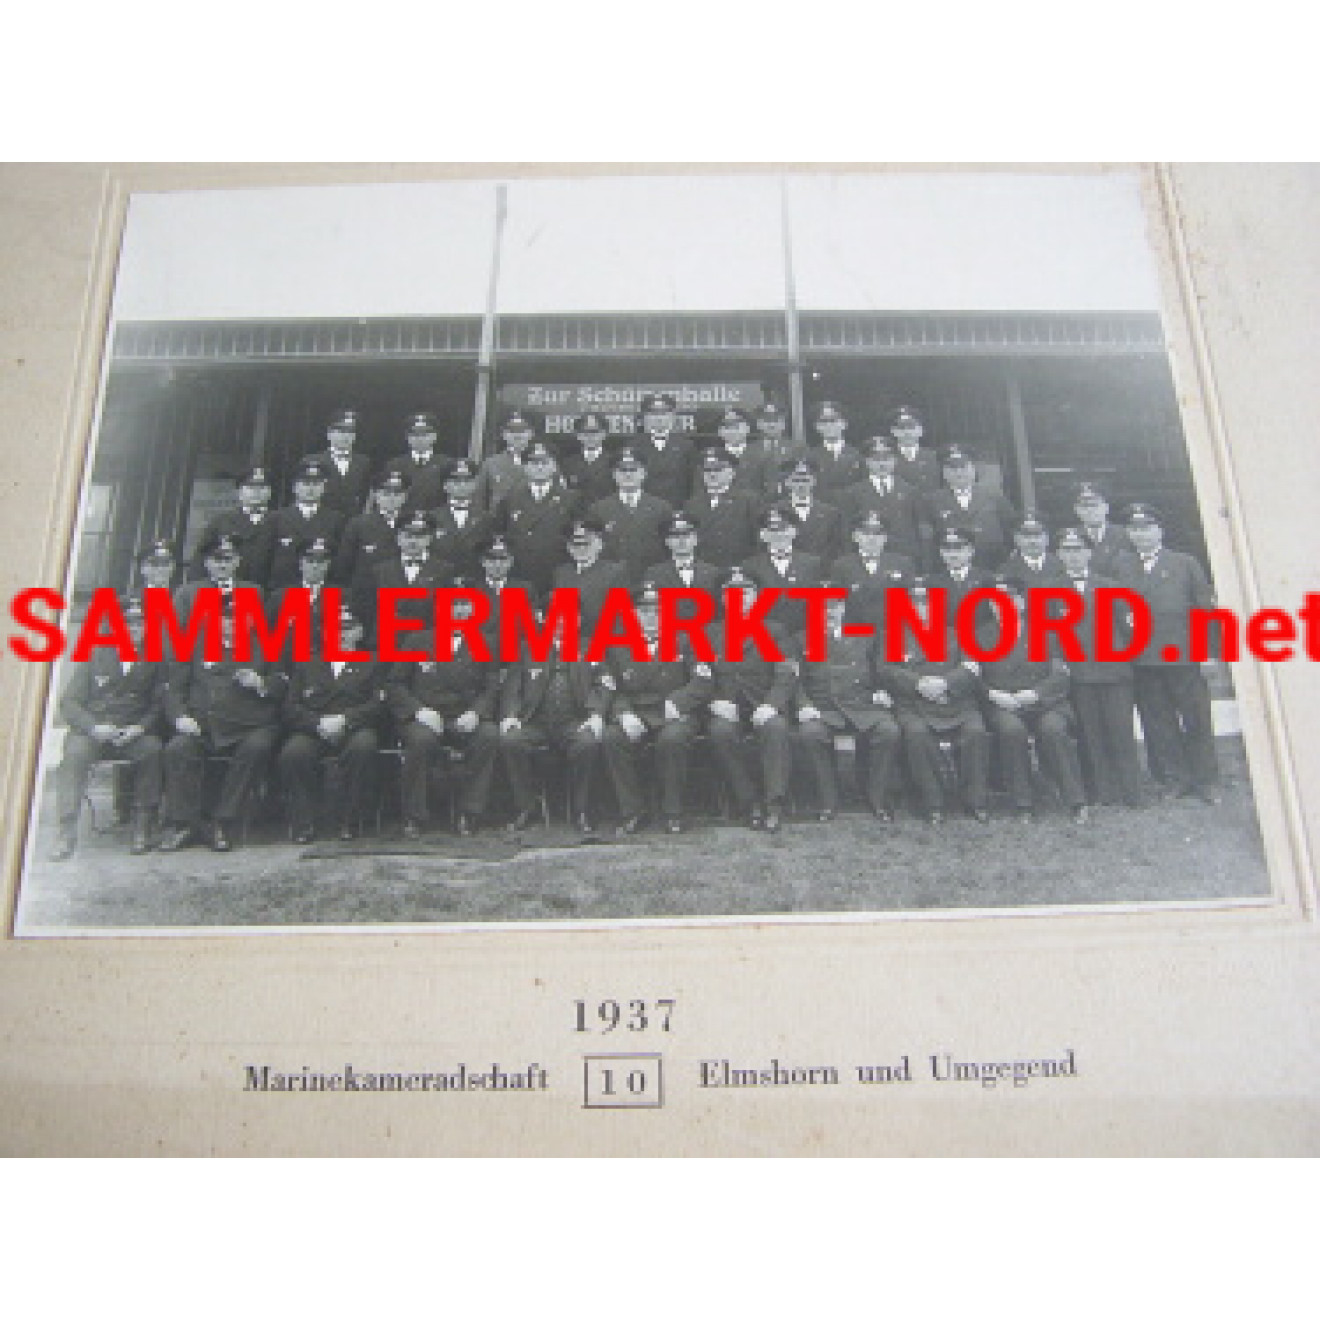 Large sized sticking photo "Marinekameradschaft 10 Elsmhorn und 